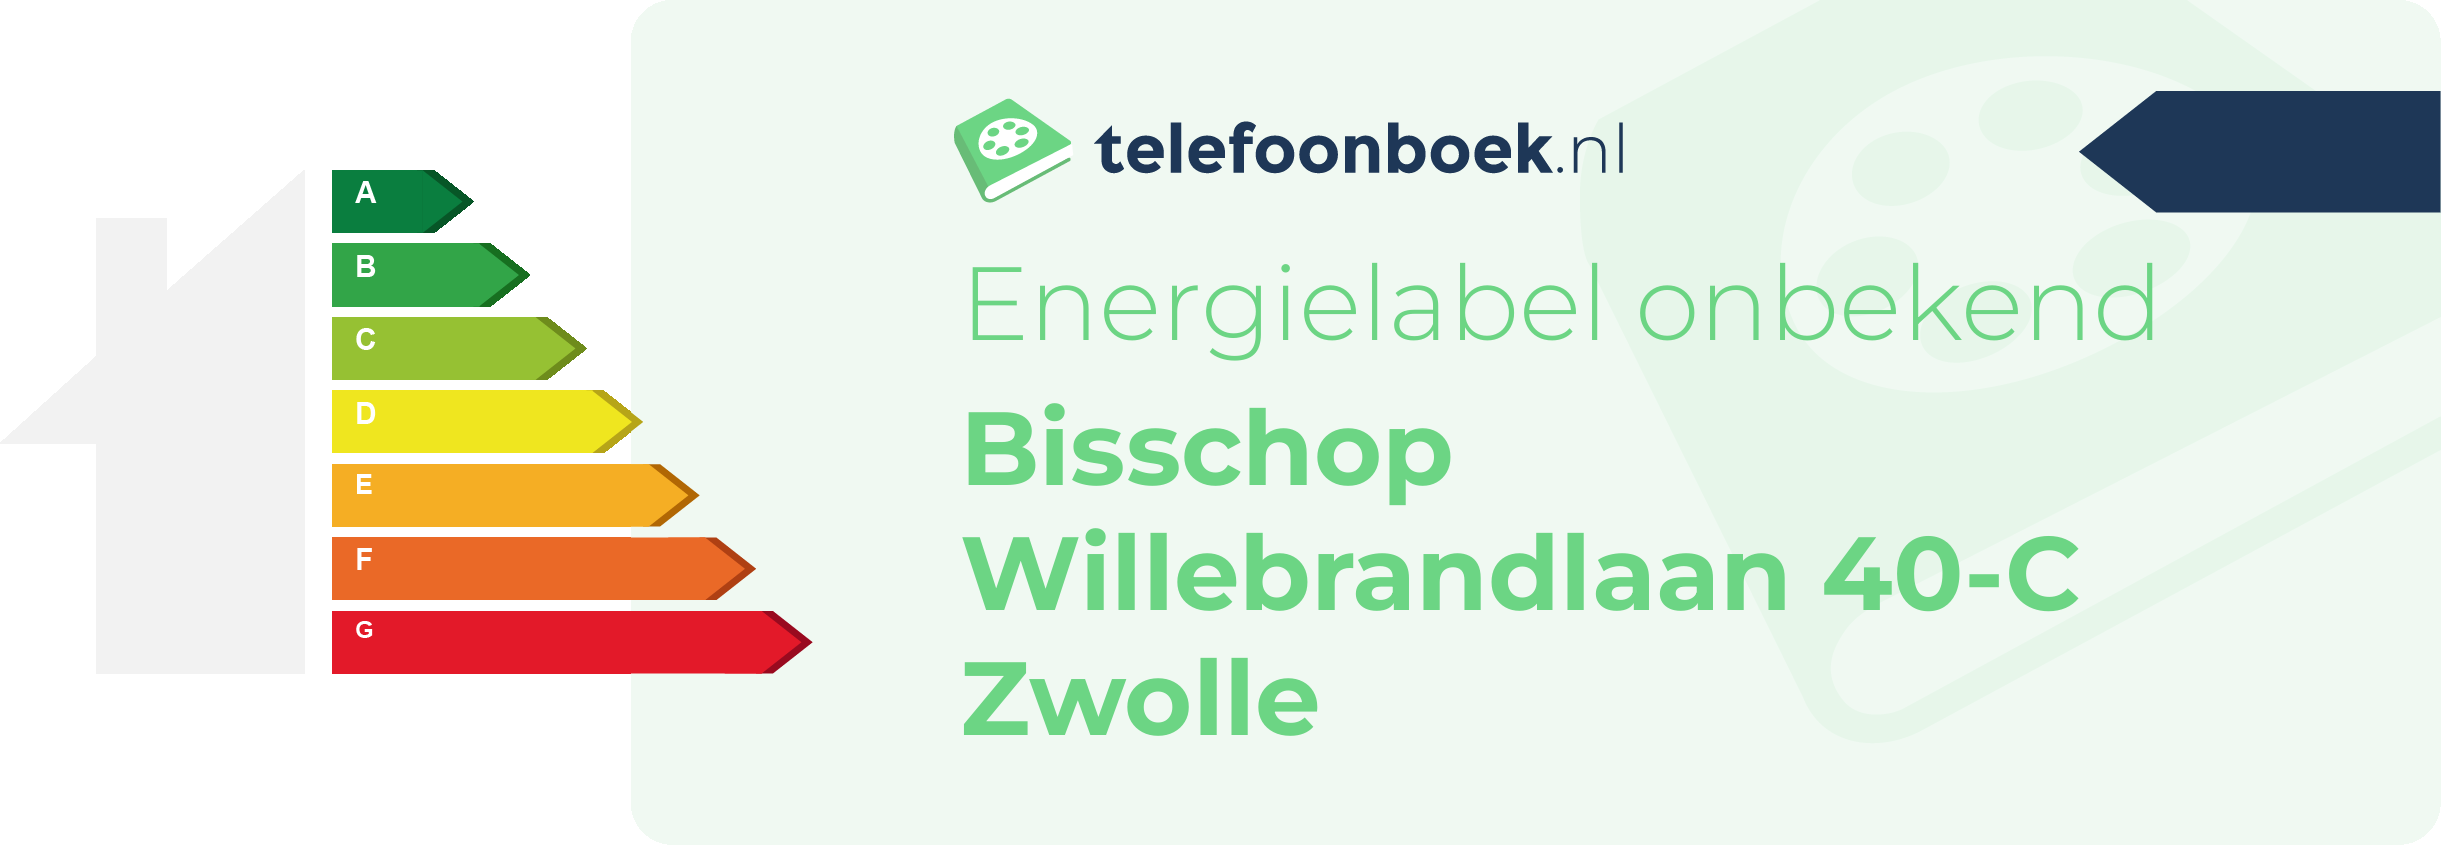 Energielabel Bisschop Willebrandlaan 40-C Zwolle